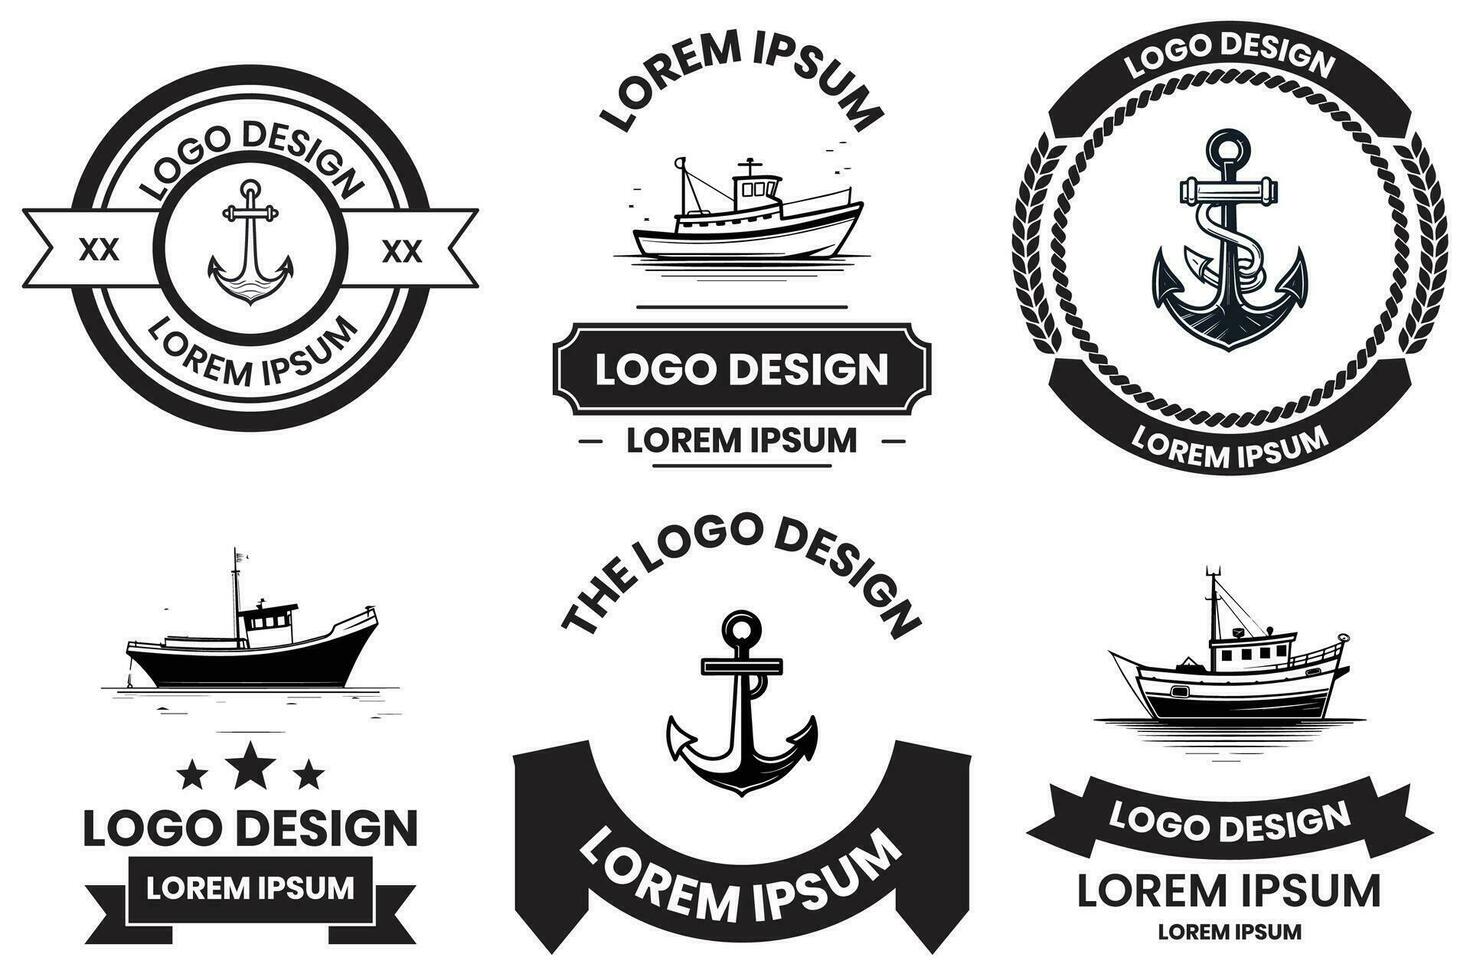 visvangst en maritiem logo in vlak lijn kunst stijl vector